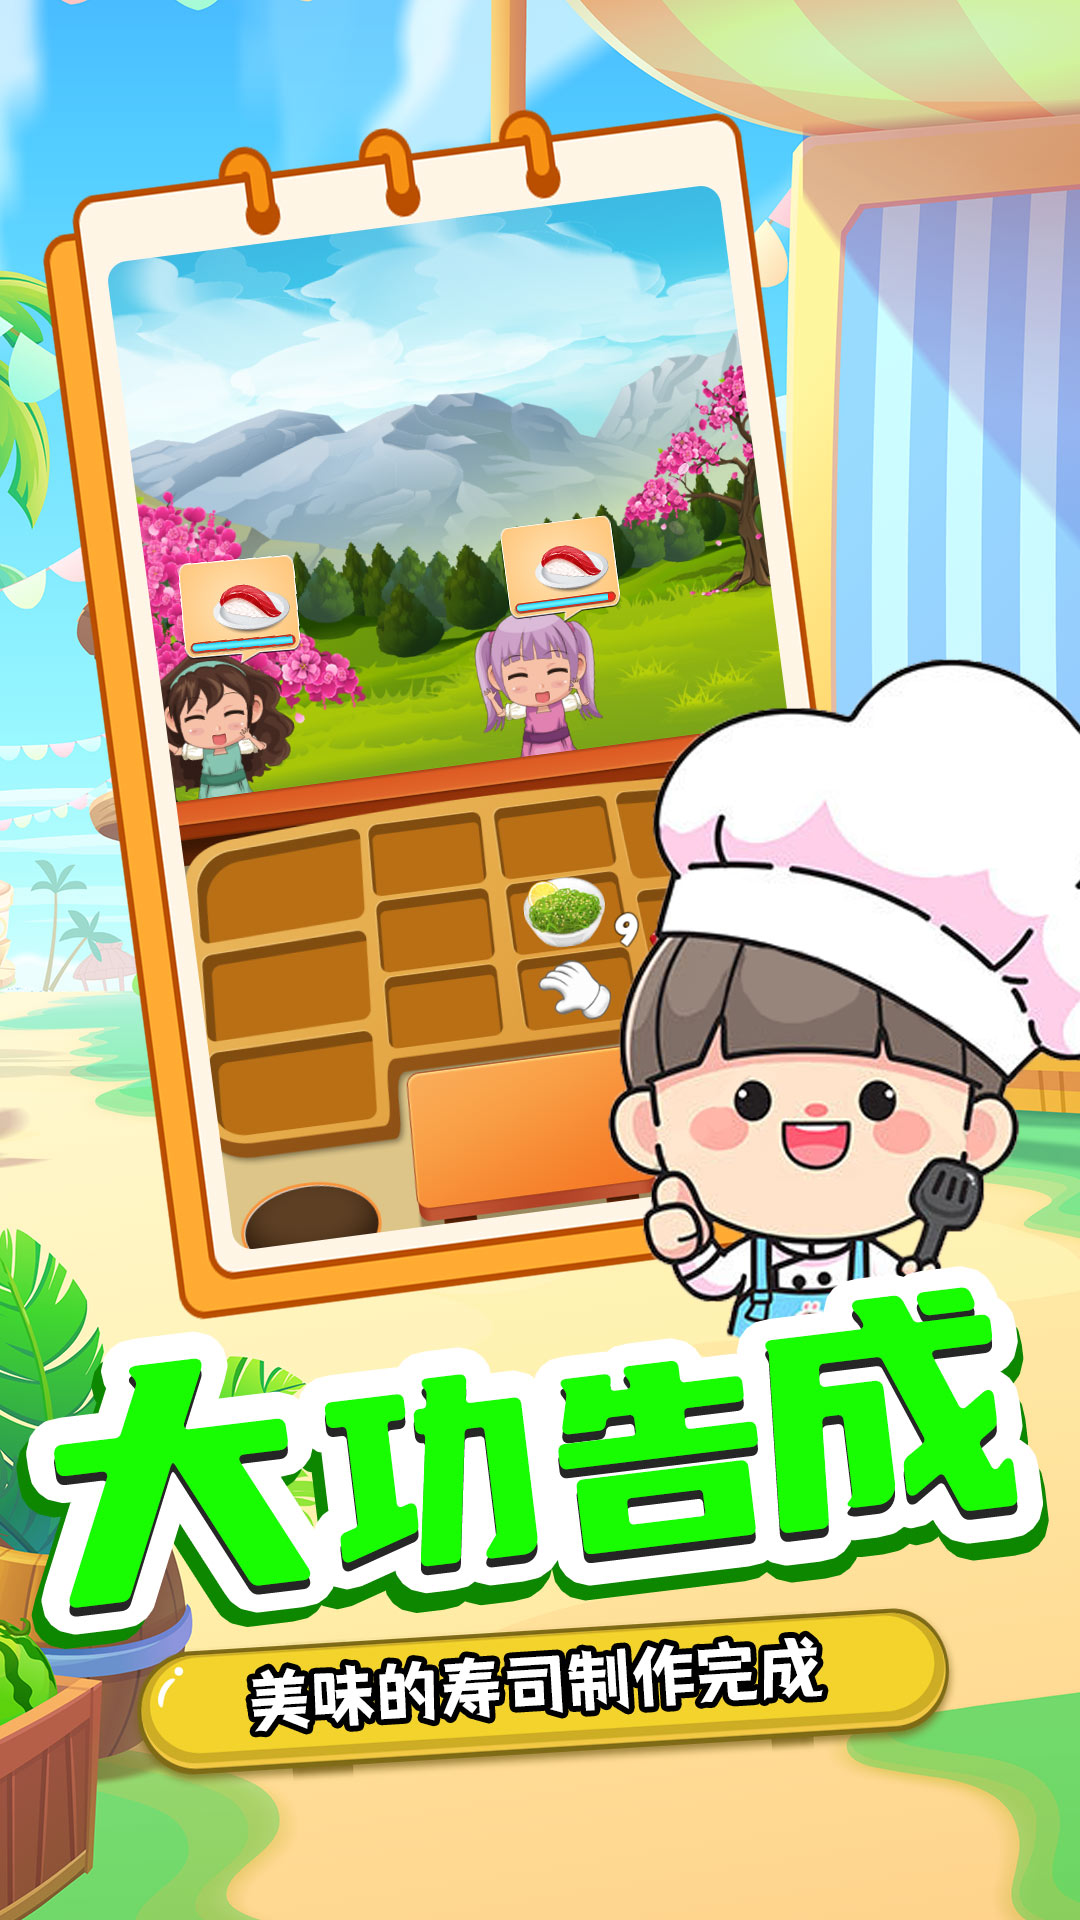 宝宝寿司料理厨房游戏安卓版截图4: